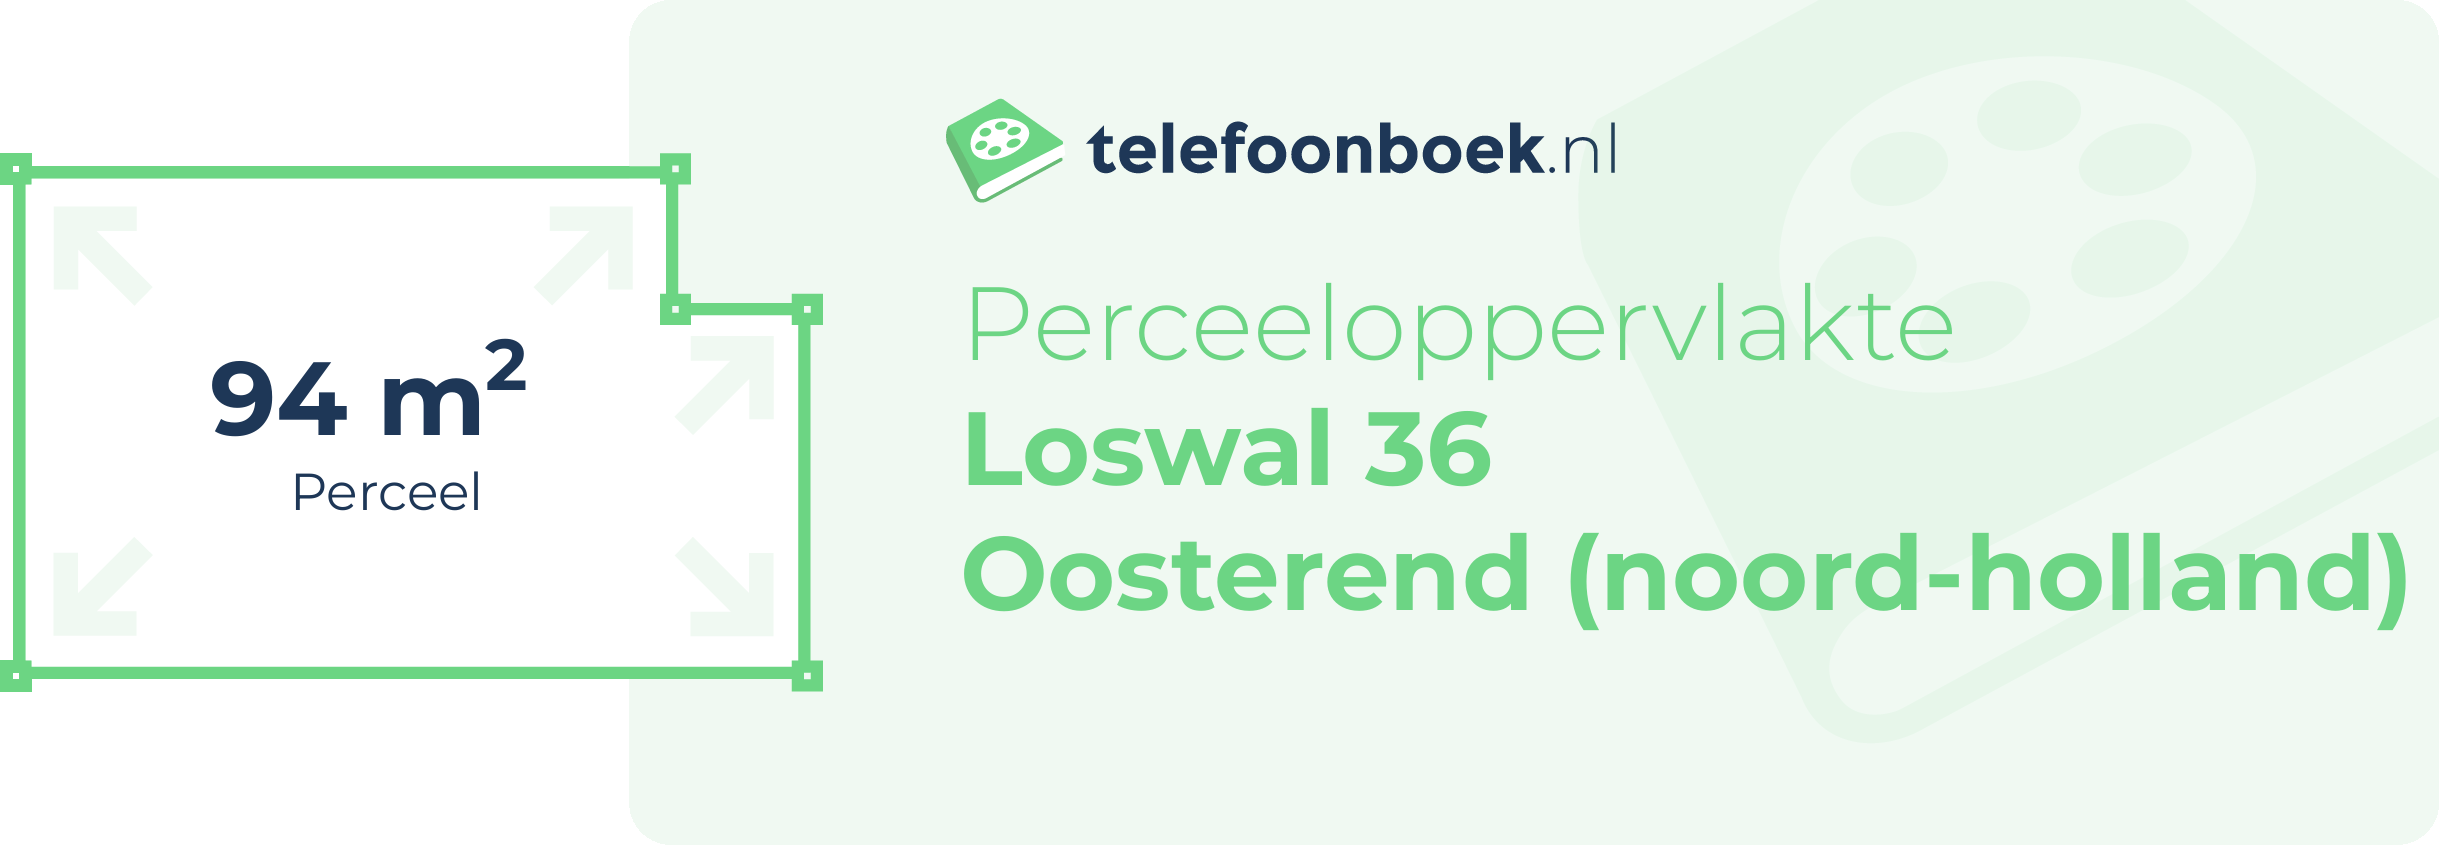 Perceeloppervlakte Loswal 36 Oosterend (Noord-Holland)